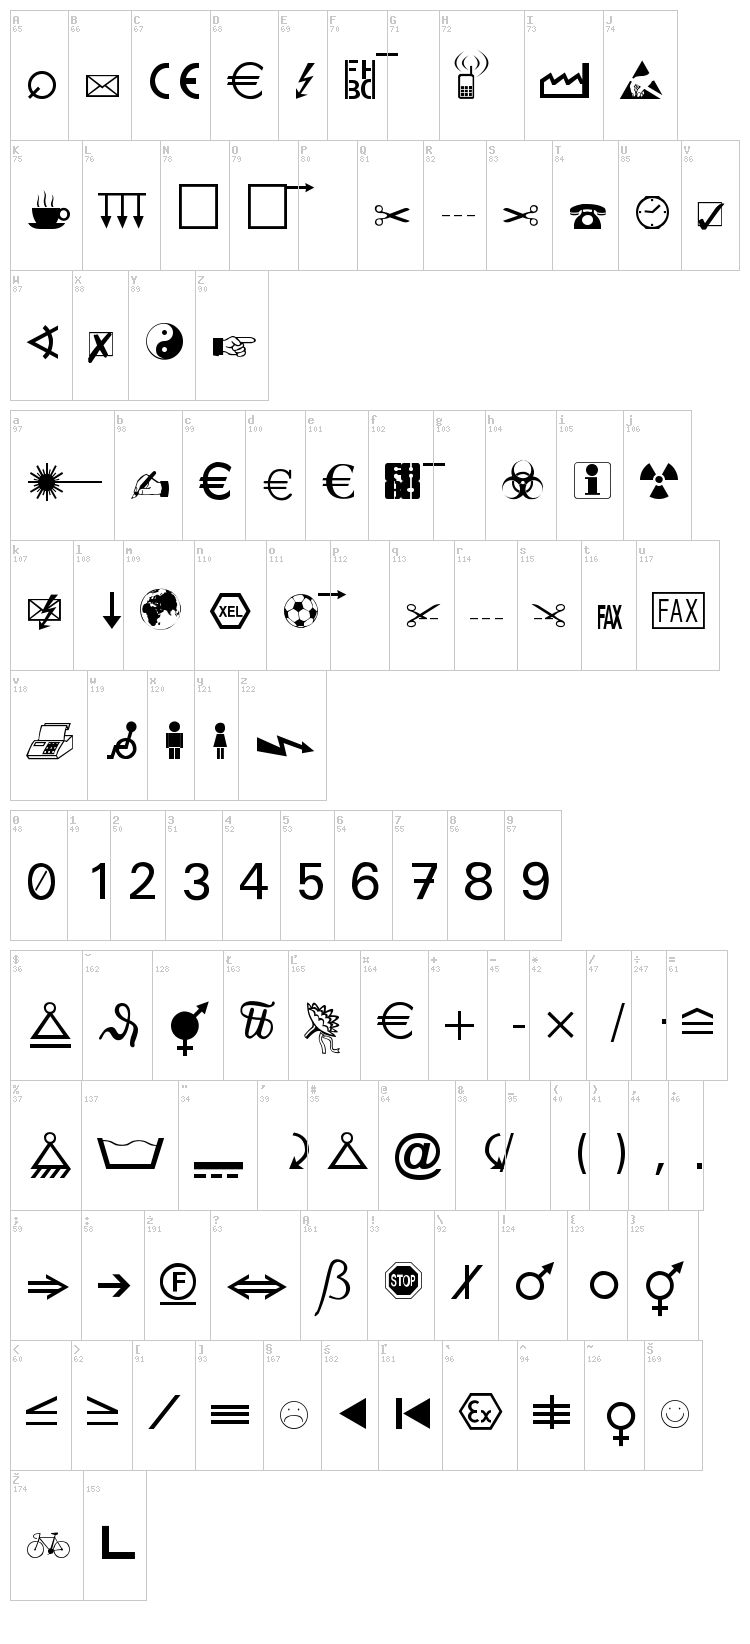 Martin Vogel's Symbols font map